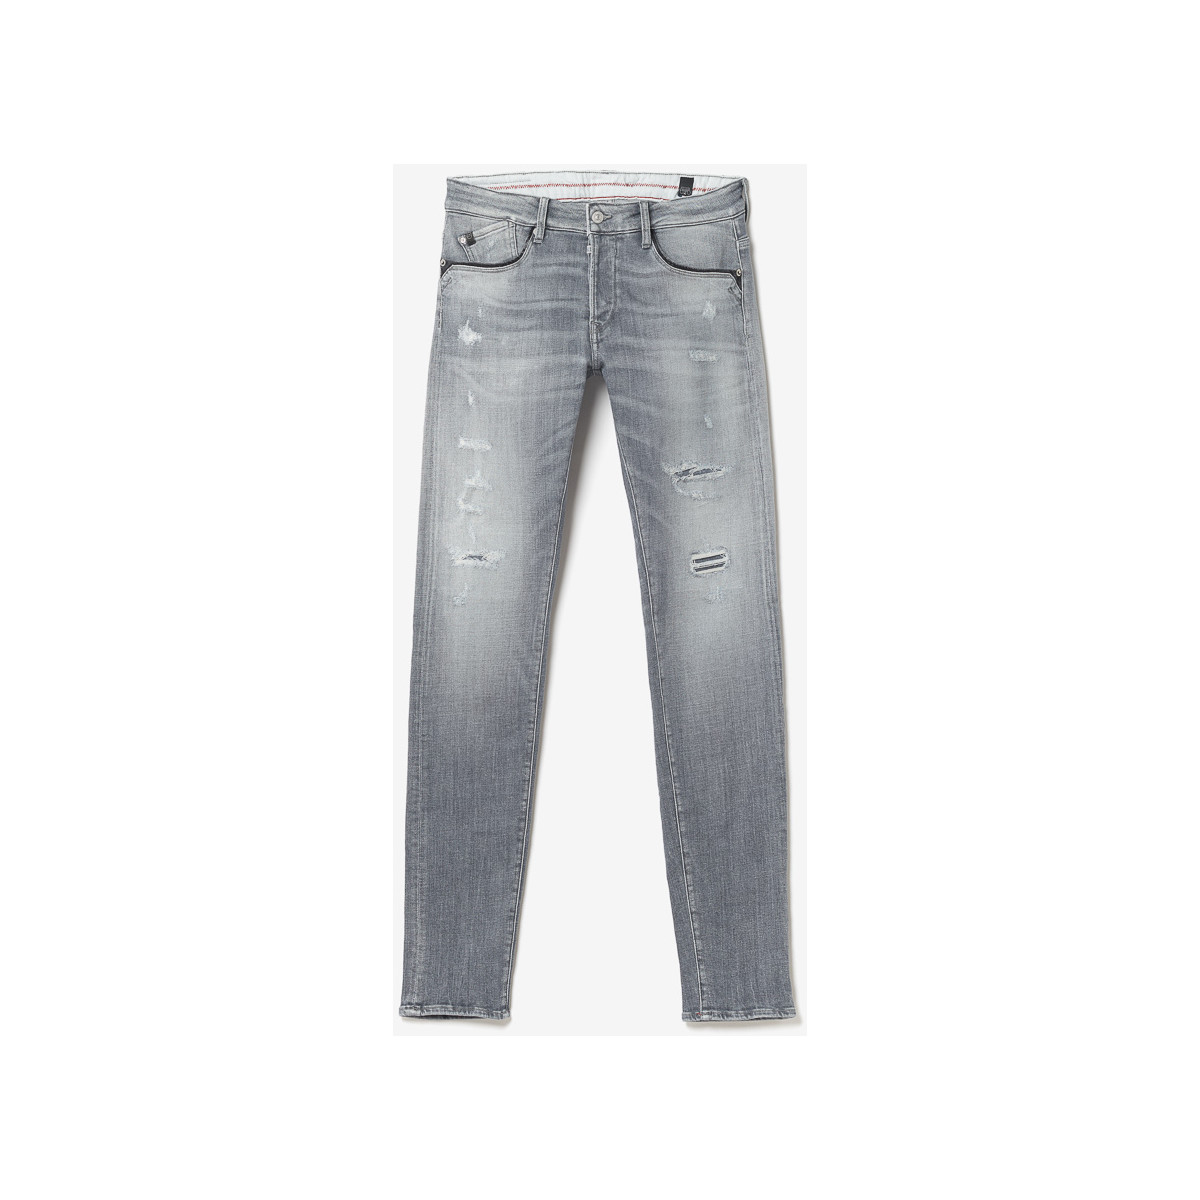 Le Temps des Cerises Gris Triolet 700/11 adjusted jeans